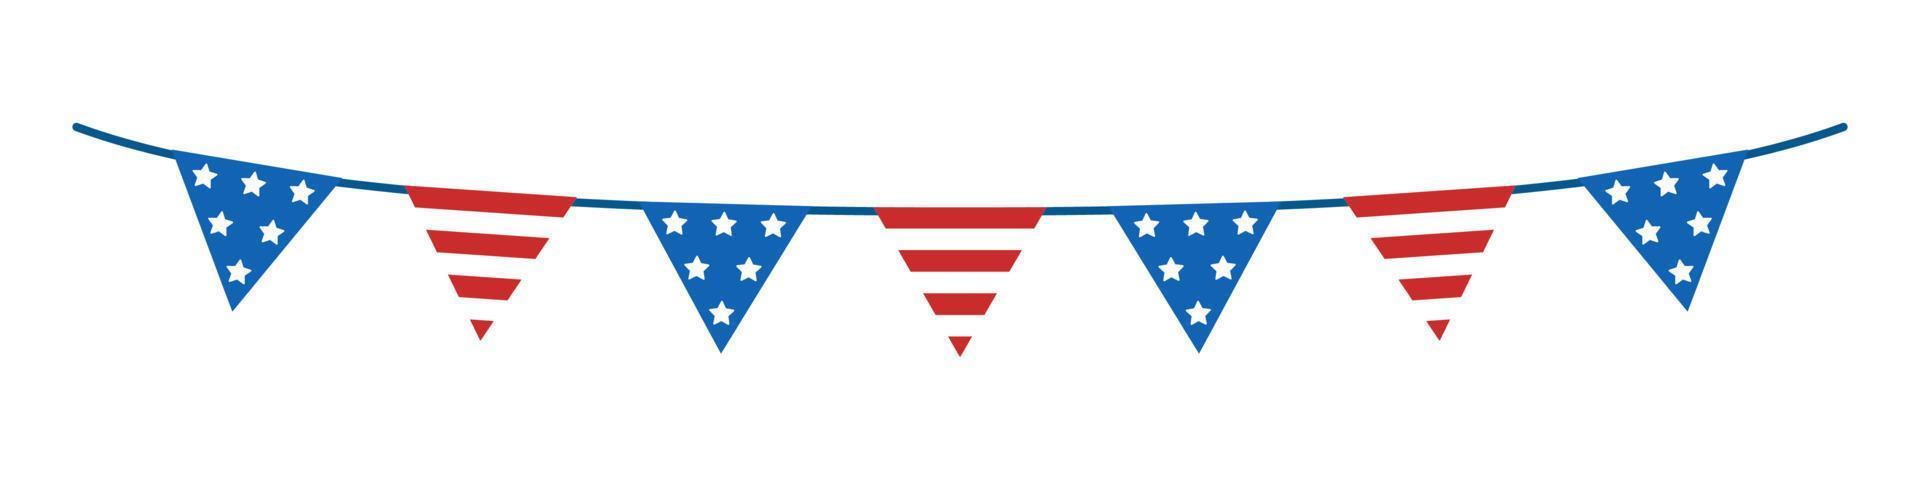 vector usa slinger van vlaggen. onafhankelijkheidsdag bunting clipart. driehoeken. vlag met sterren en gestreepte vlag.